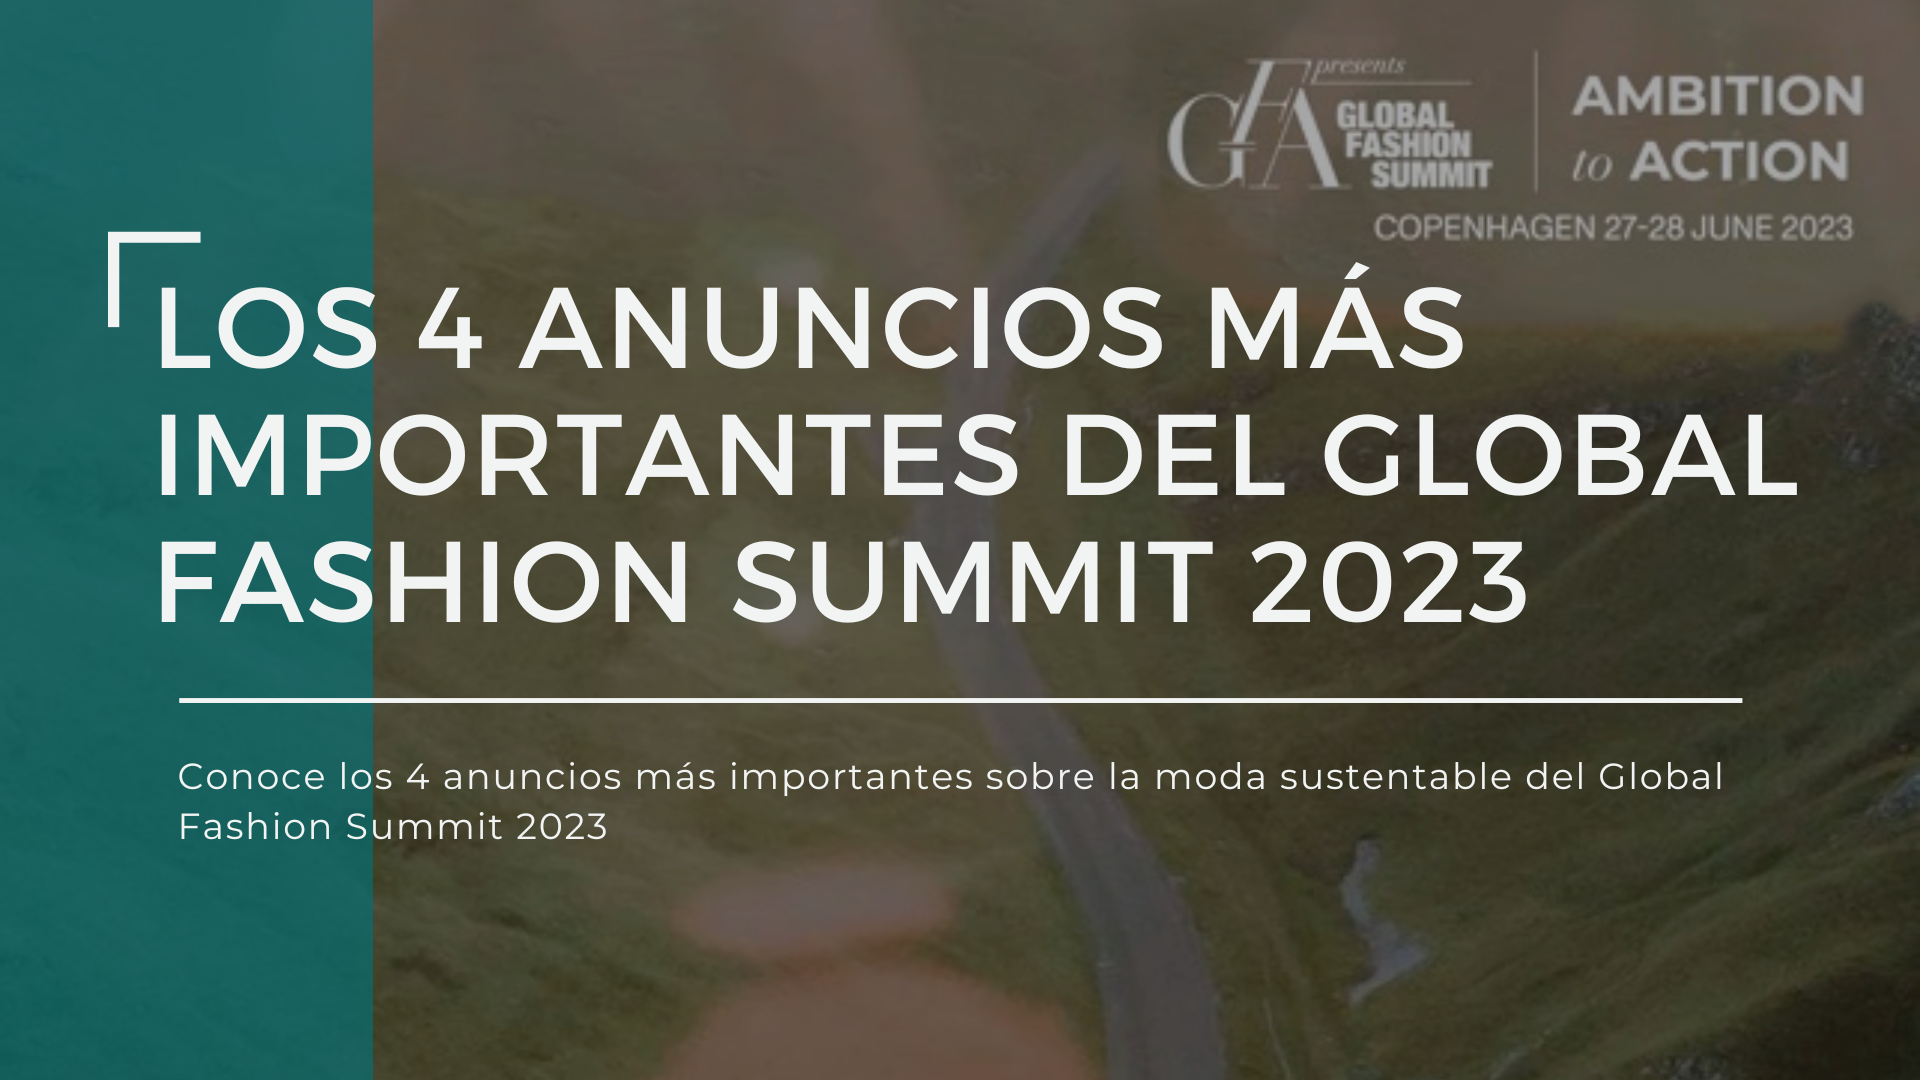 Los 4 anuncios más importantes del Global Fashion Summit 2023